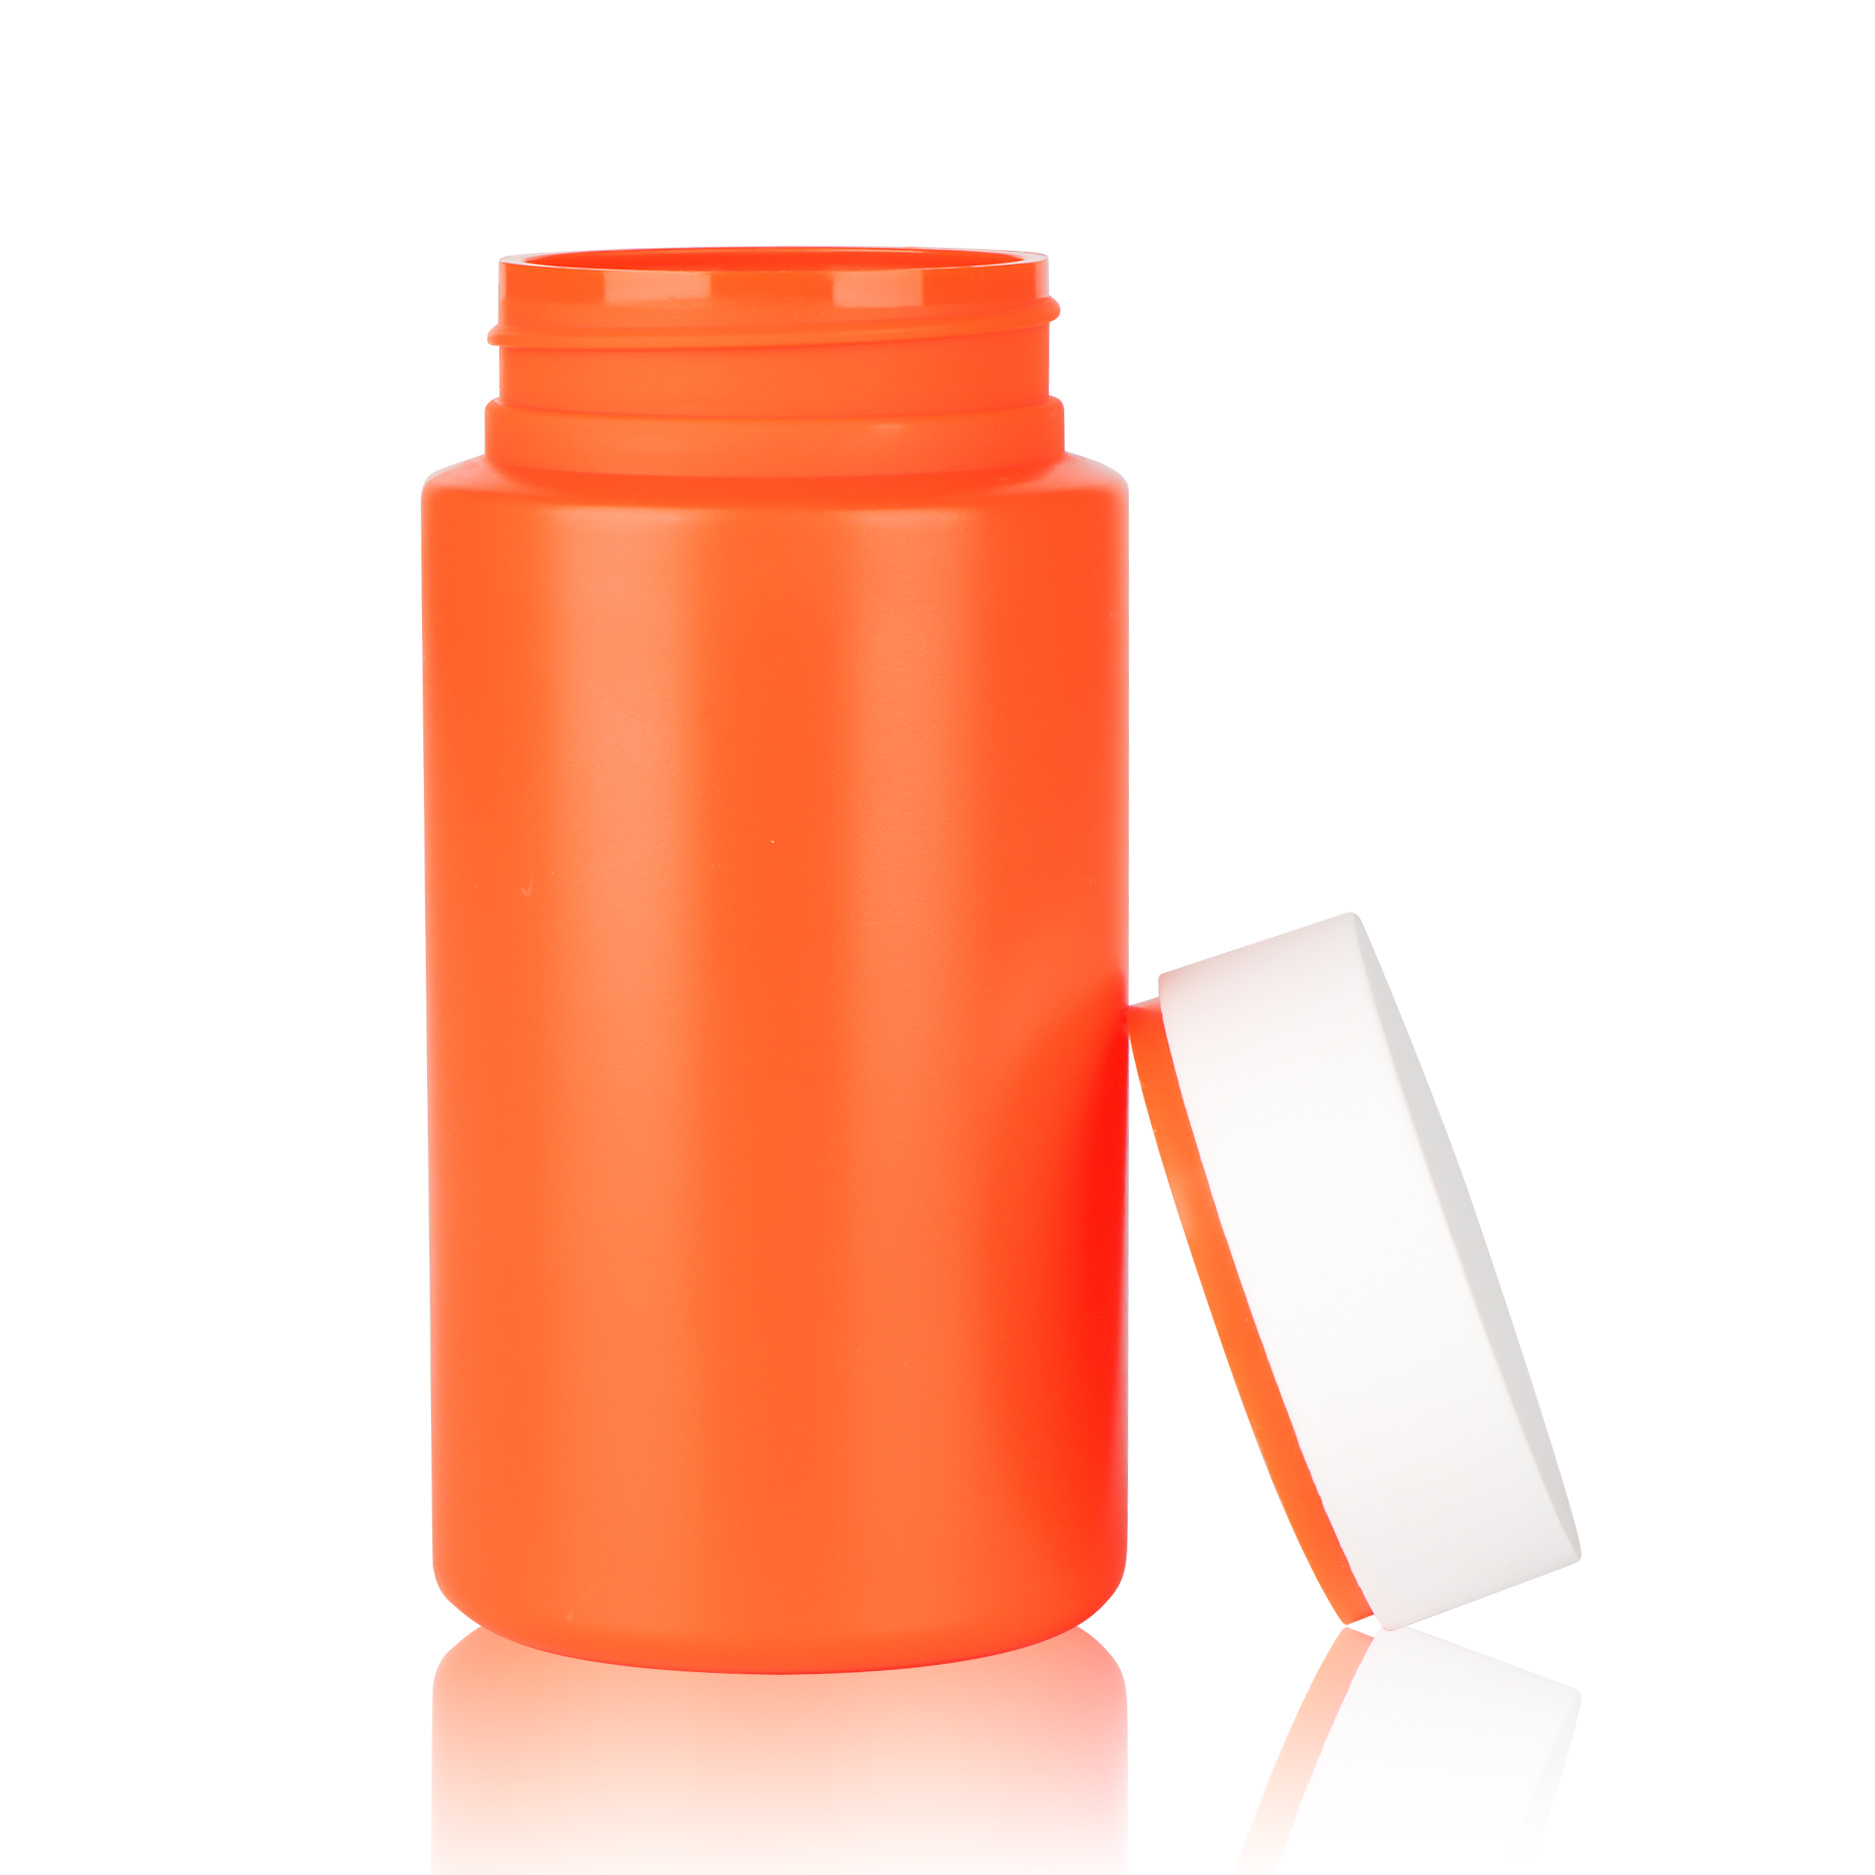 HDPE PCR child proof jar Vitamin C Orange capsule container pill bottle capsule bottle